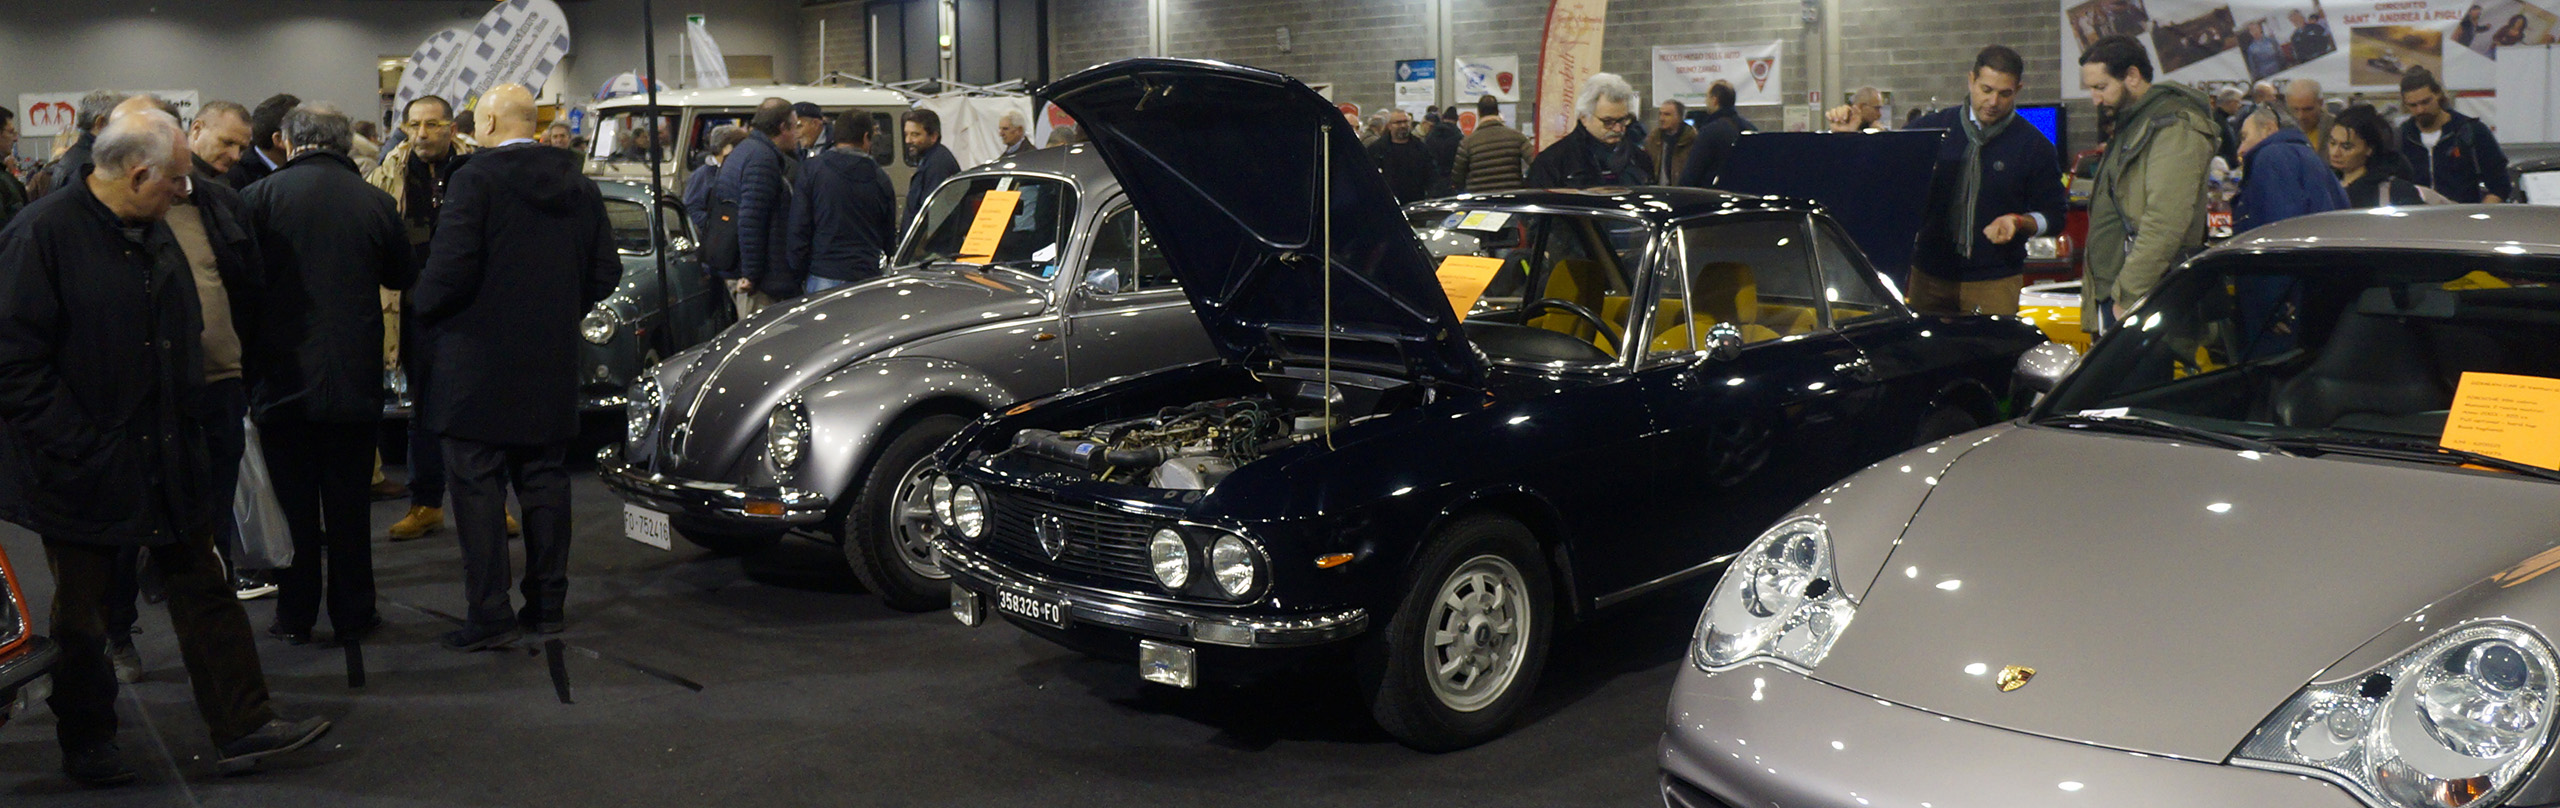 Arezzo Classic Motors